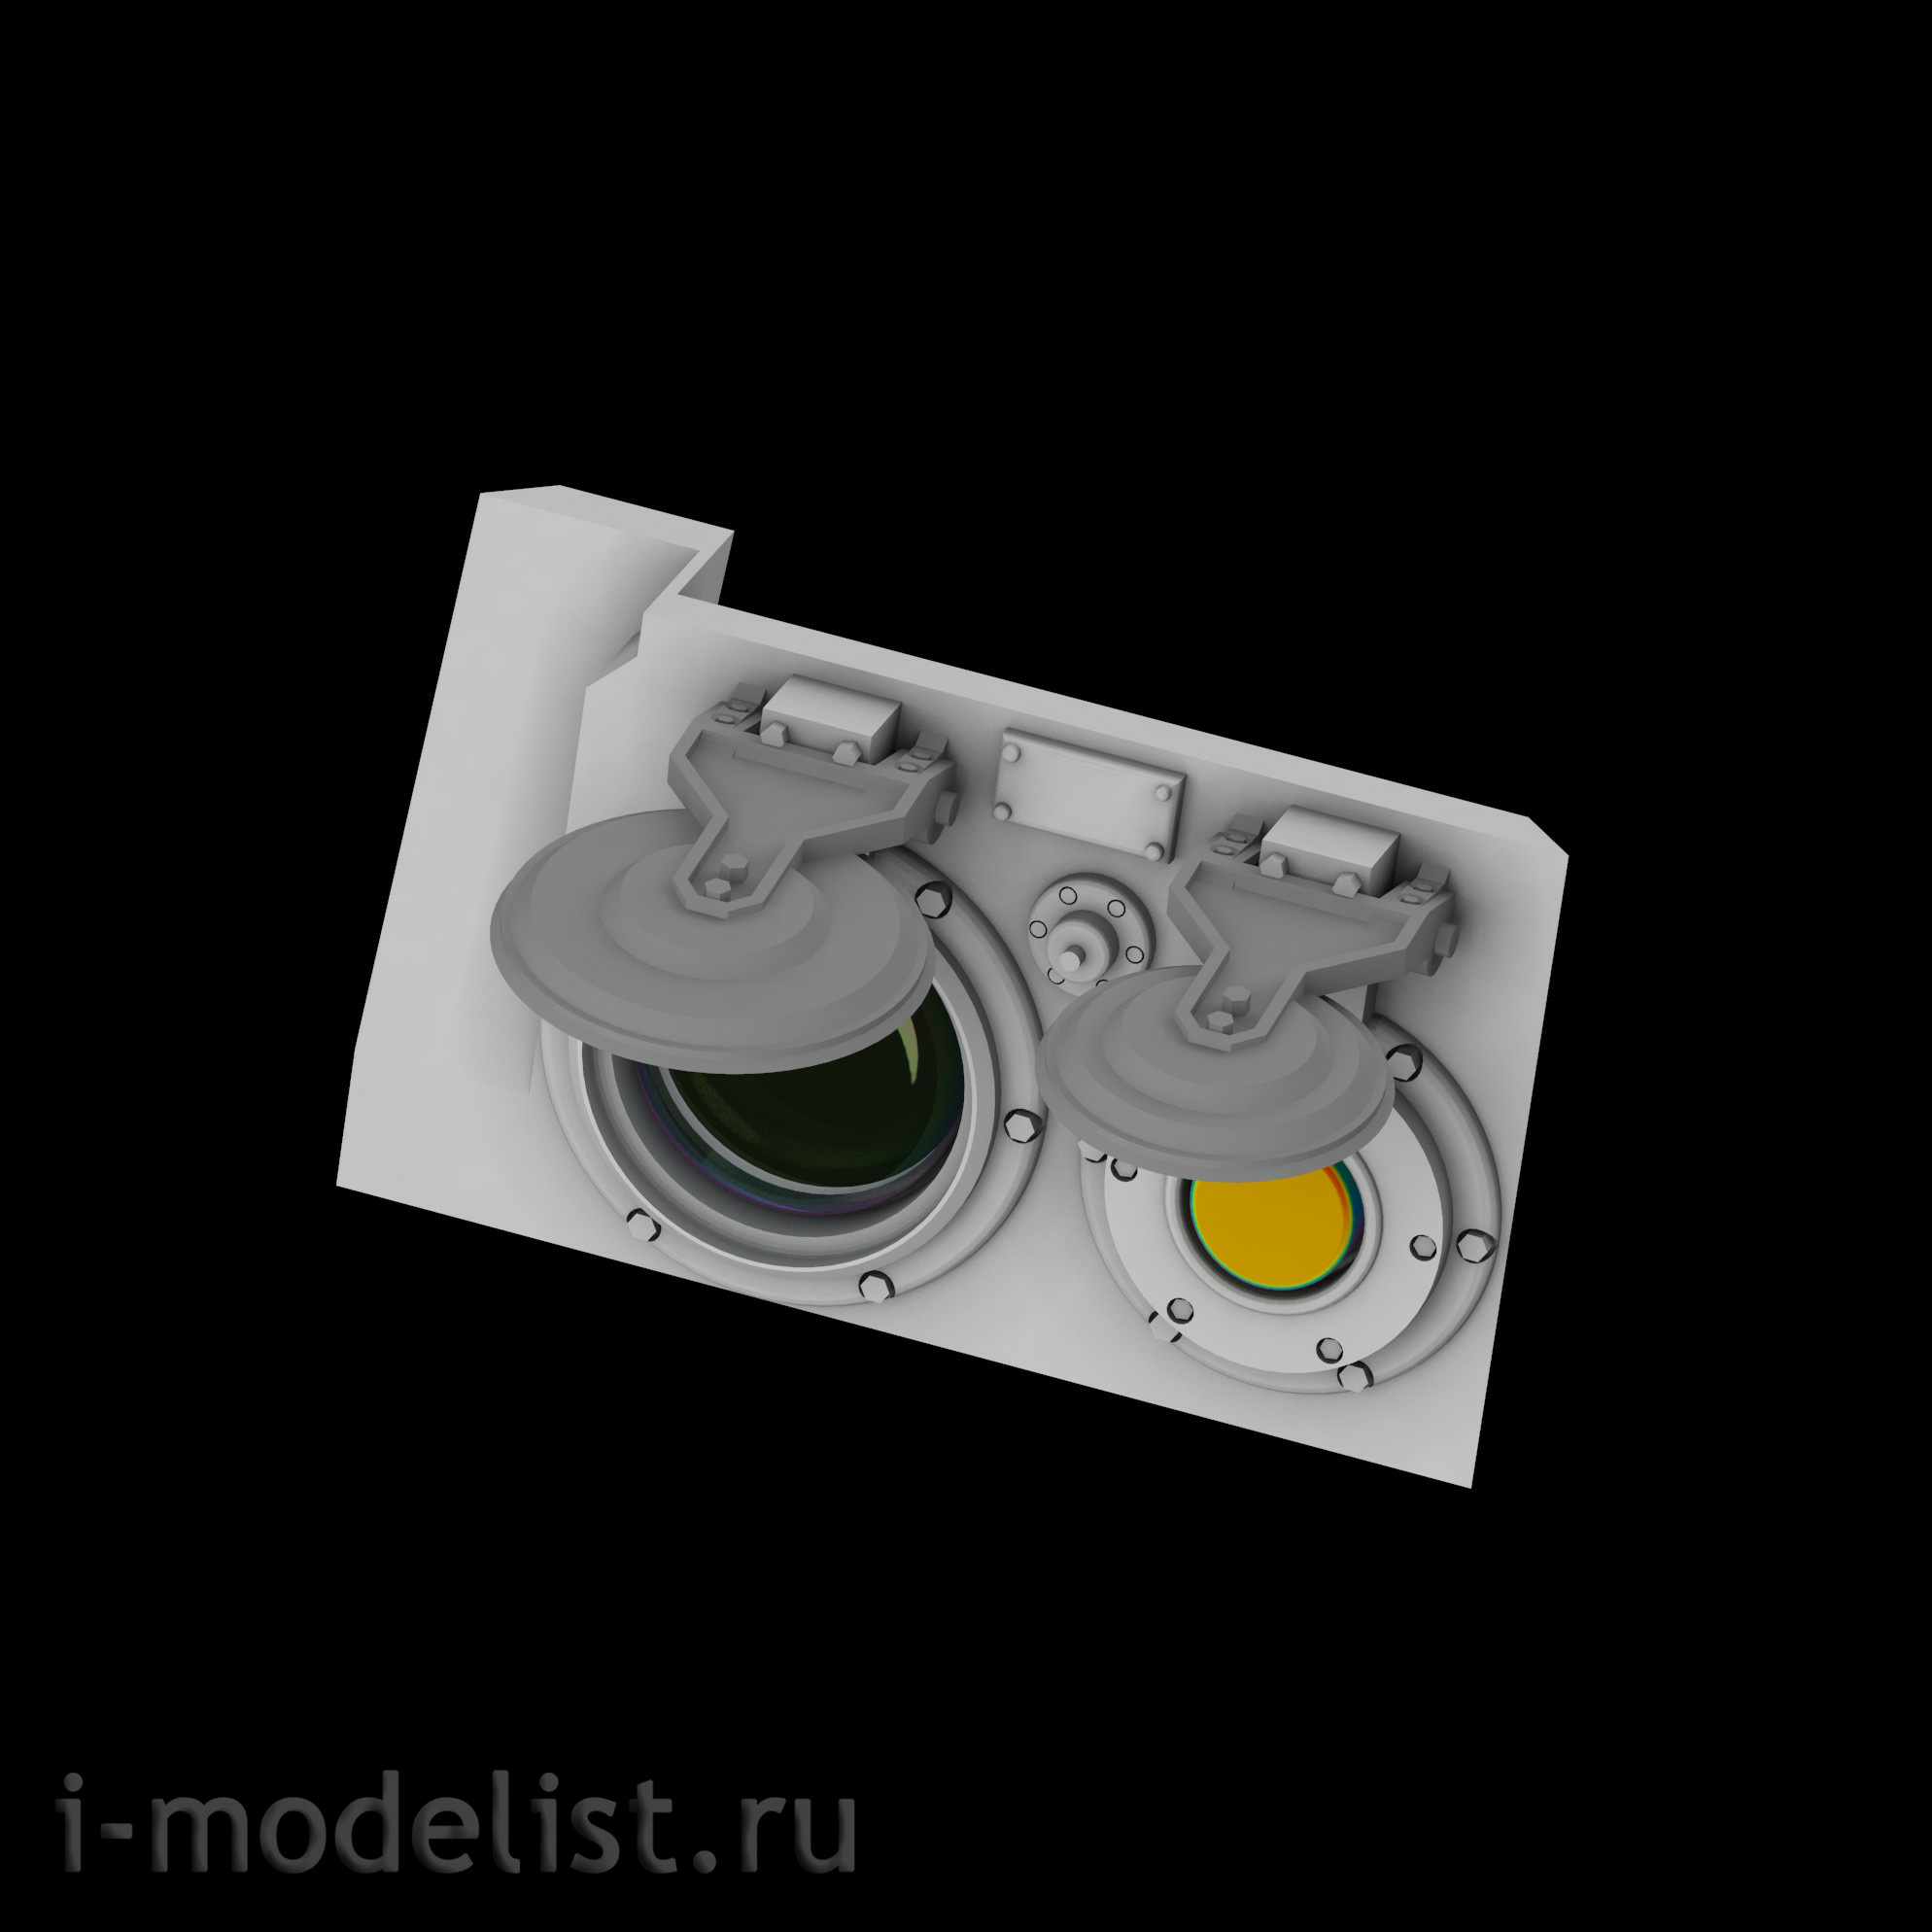 im35023 Imodelist 1/35 Оптический прицел для Тор-М2